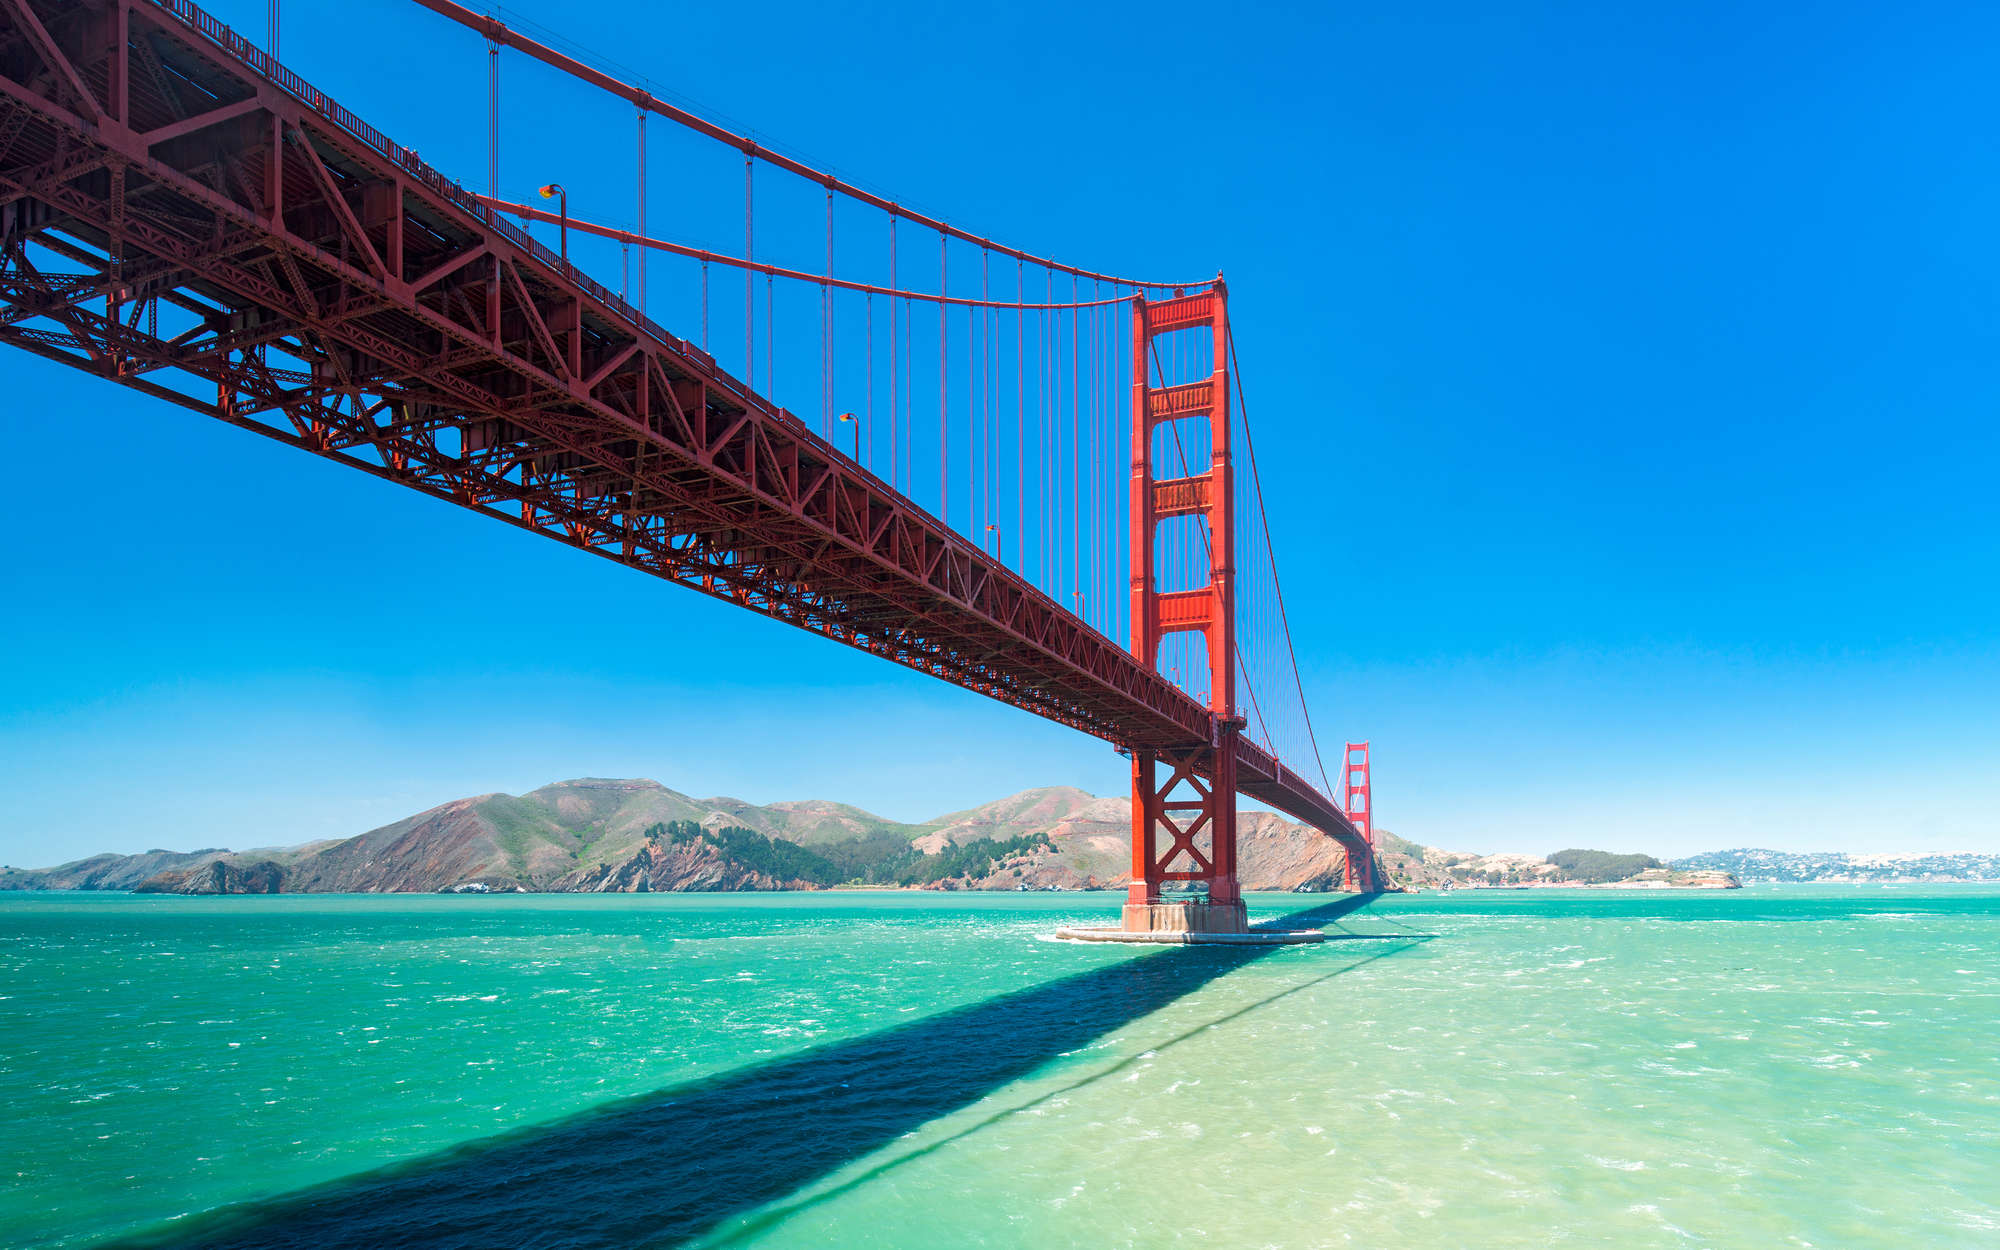             Golden Gate Bridge in San Francisco mural - Matt smooth non-woven
        